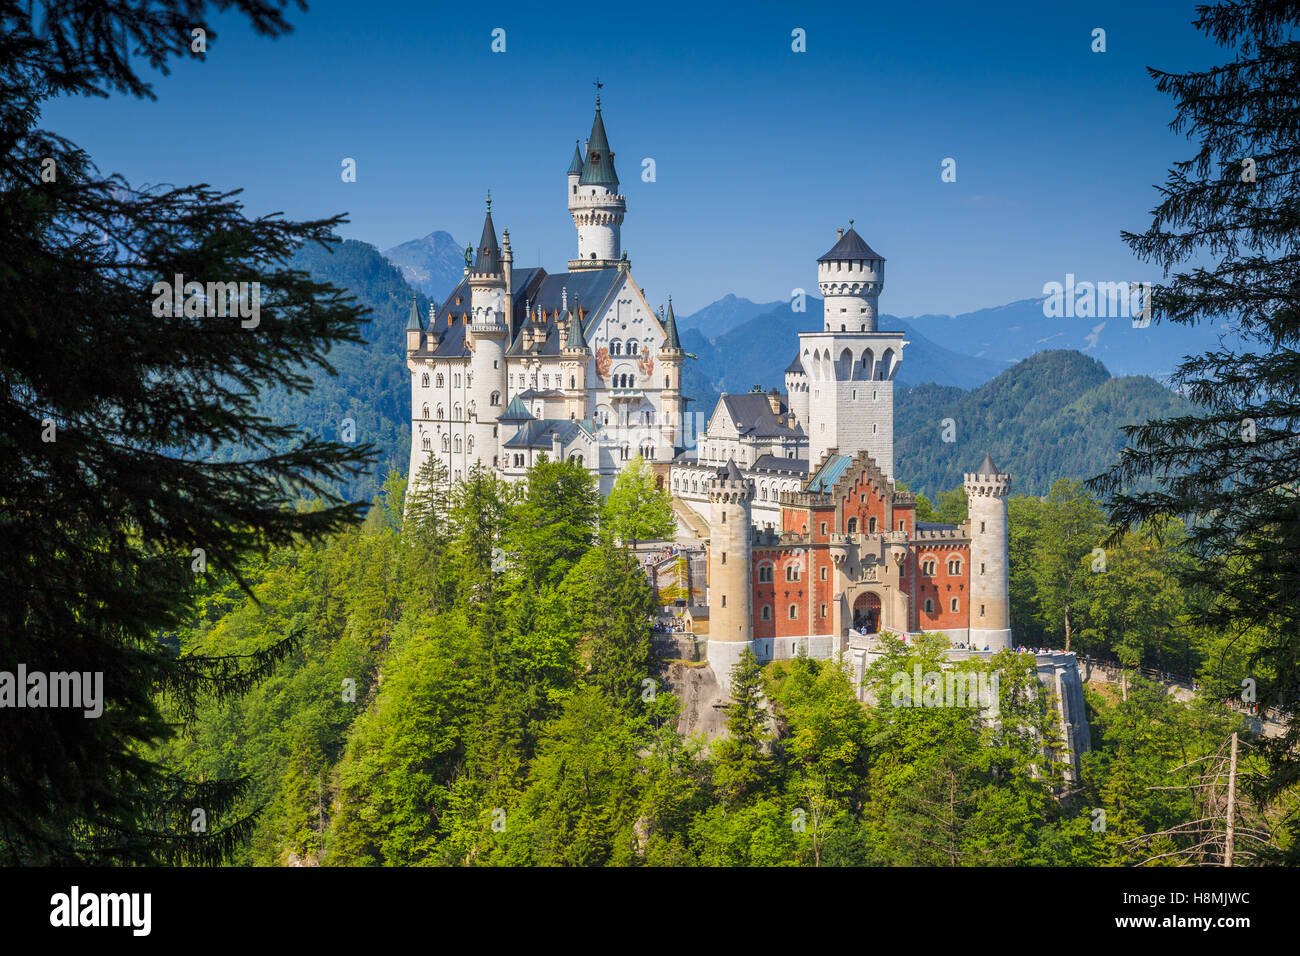 Visualizzazione classica del famoso castello di Neuschwanstein, uno d'Europa più visitato castelli, in estate, Baviera, Germania Foto Stock